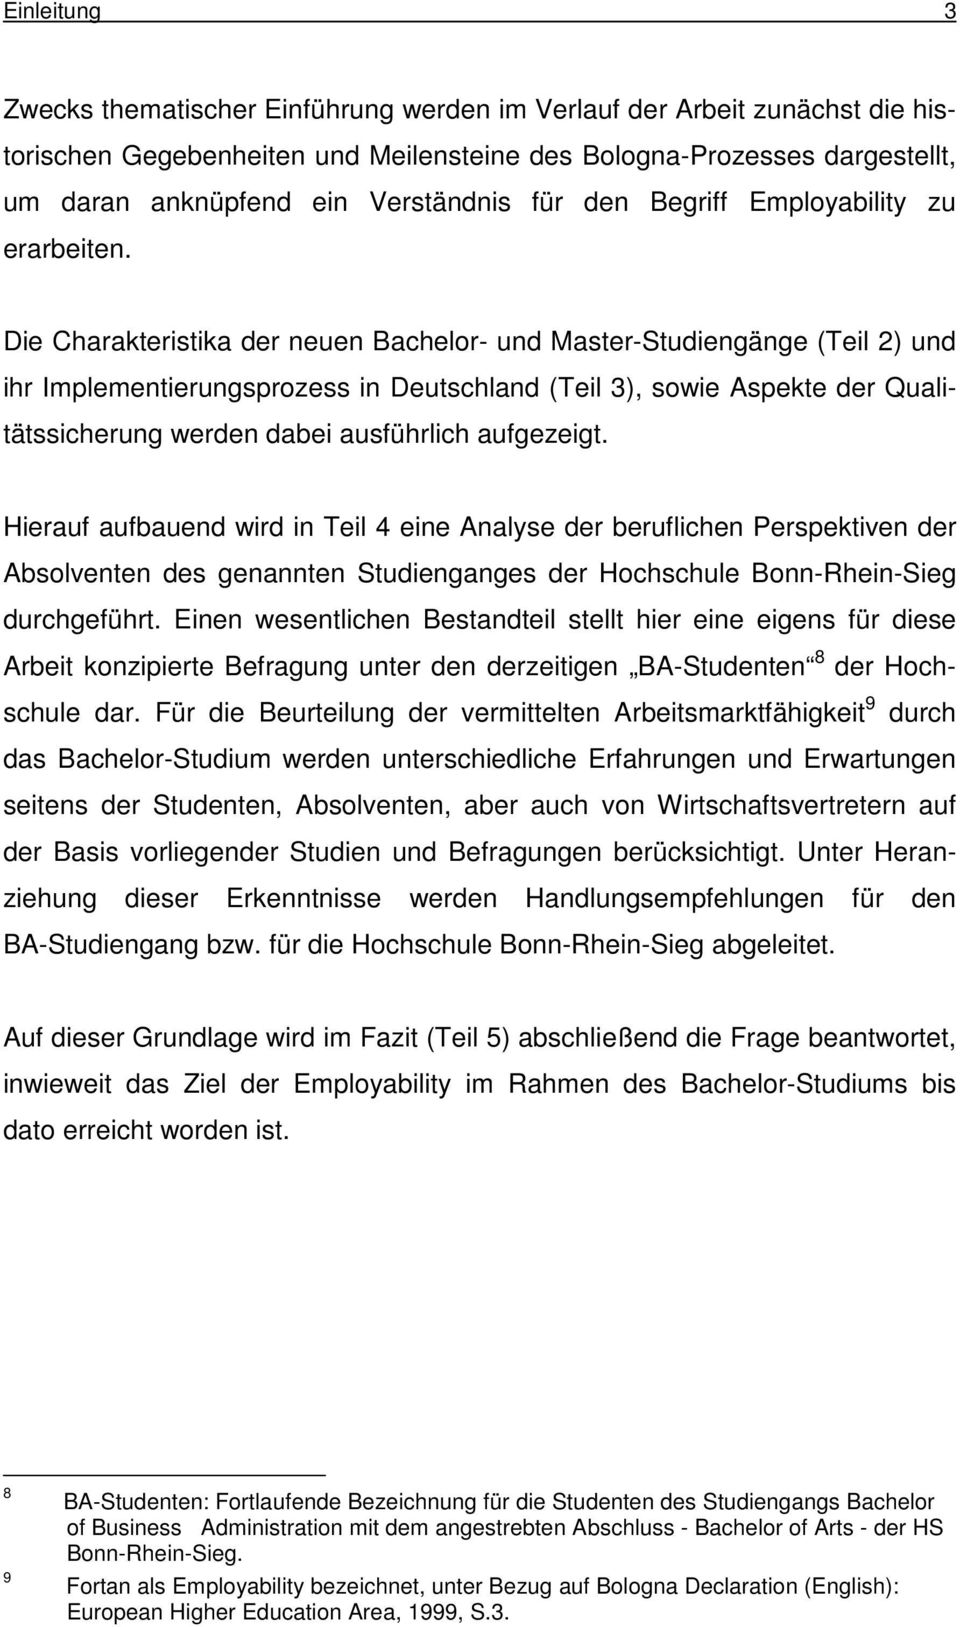 Die Charakteristika der neuen Bachelor- und Master-Studiengänge (Teil 2) und ihr Implementierungsprozess in Deutschland (Teil 3), sowie Aspekte der Qualitätssicherung werden dabei ausführlich